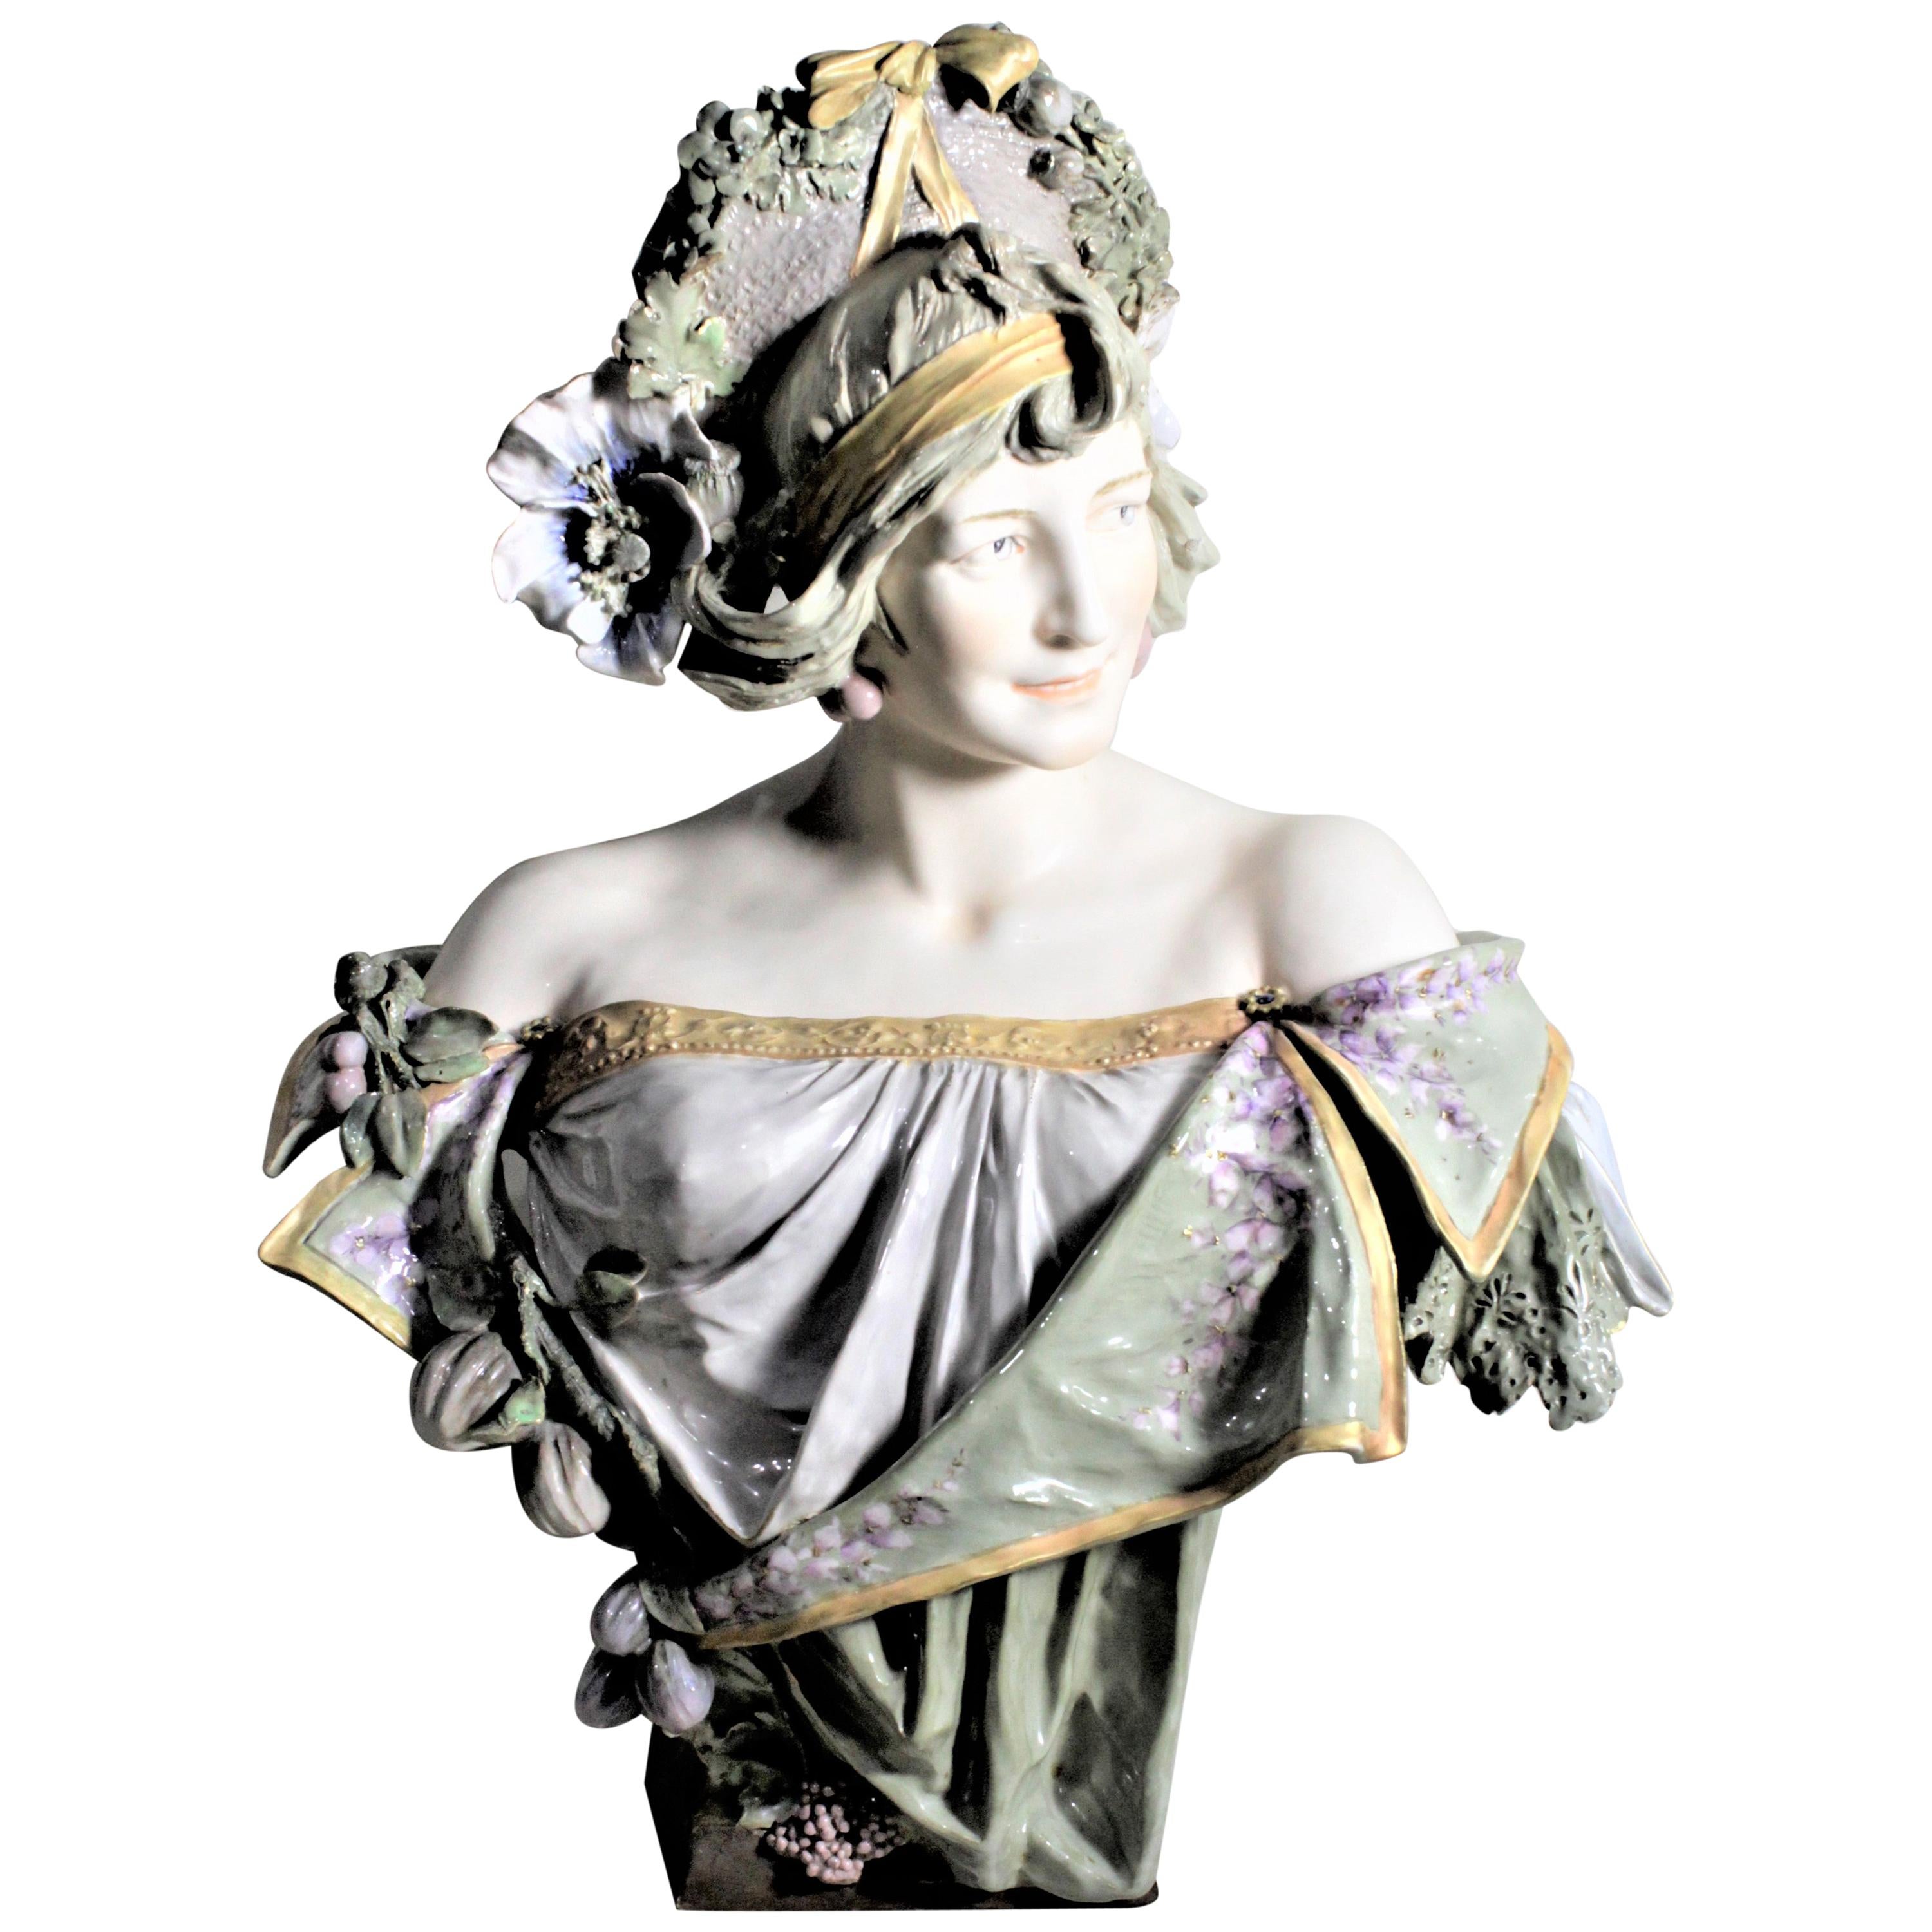 Grande sculpture ou buste de femme en porcelaine autrichienne Art nouveau